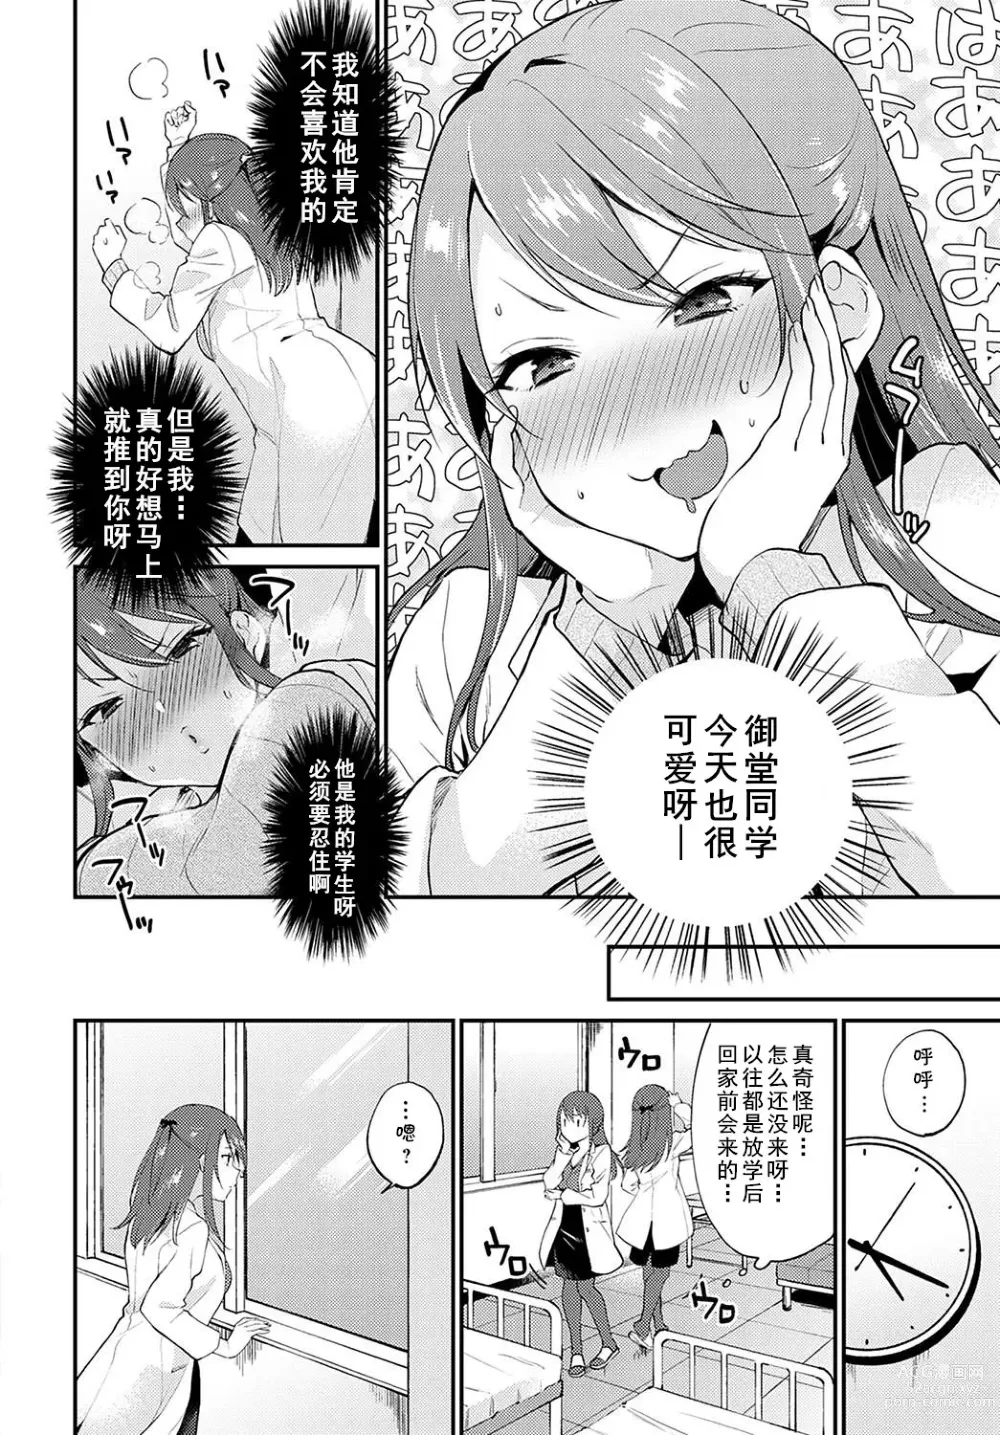 Page 6 of manga Hokenshitsu de Ecchi Shicha Ikemasen!